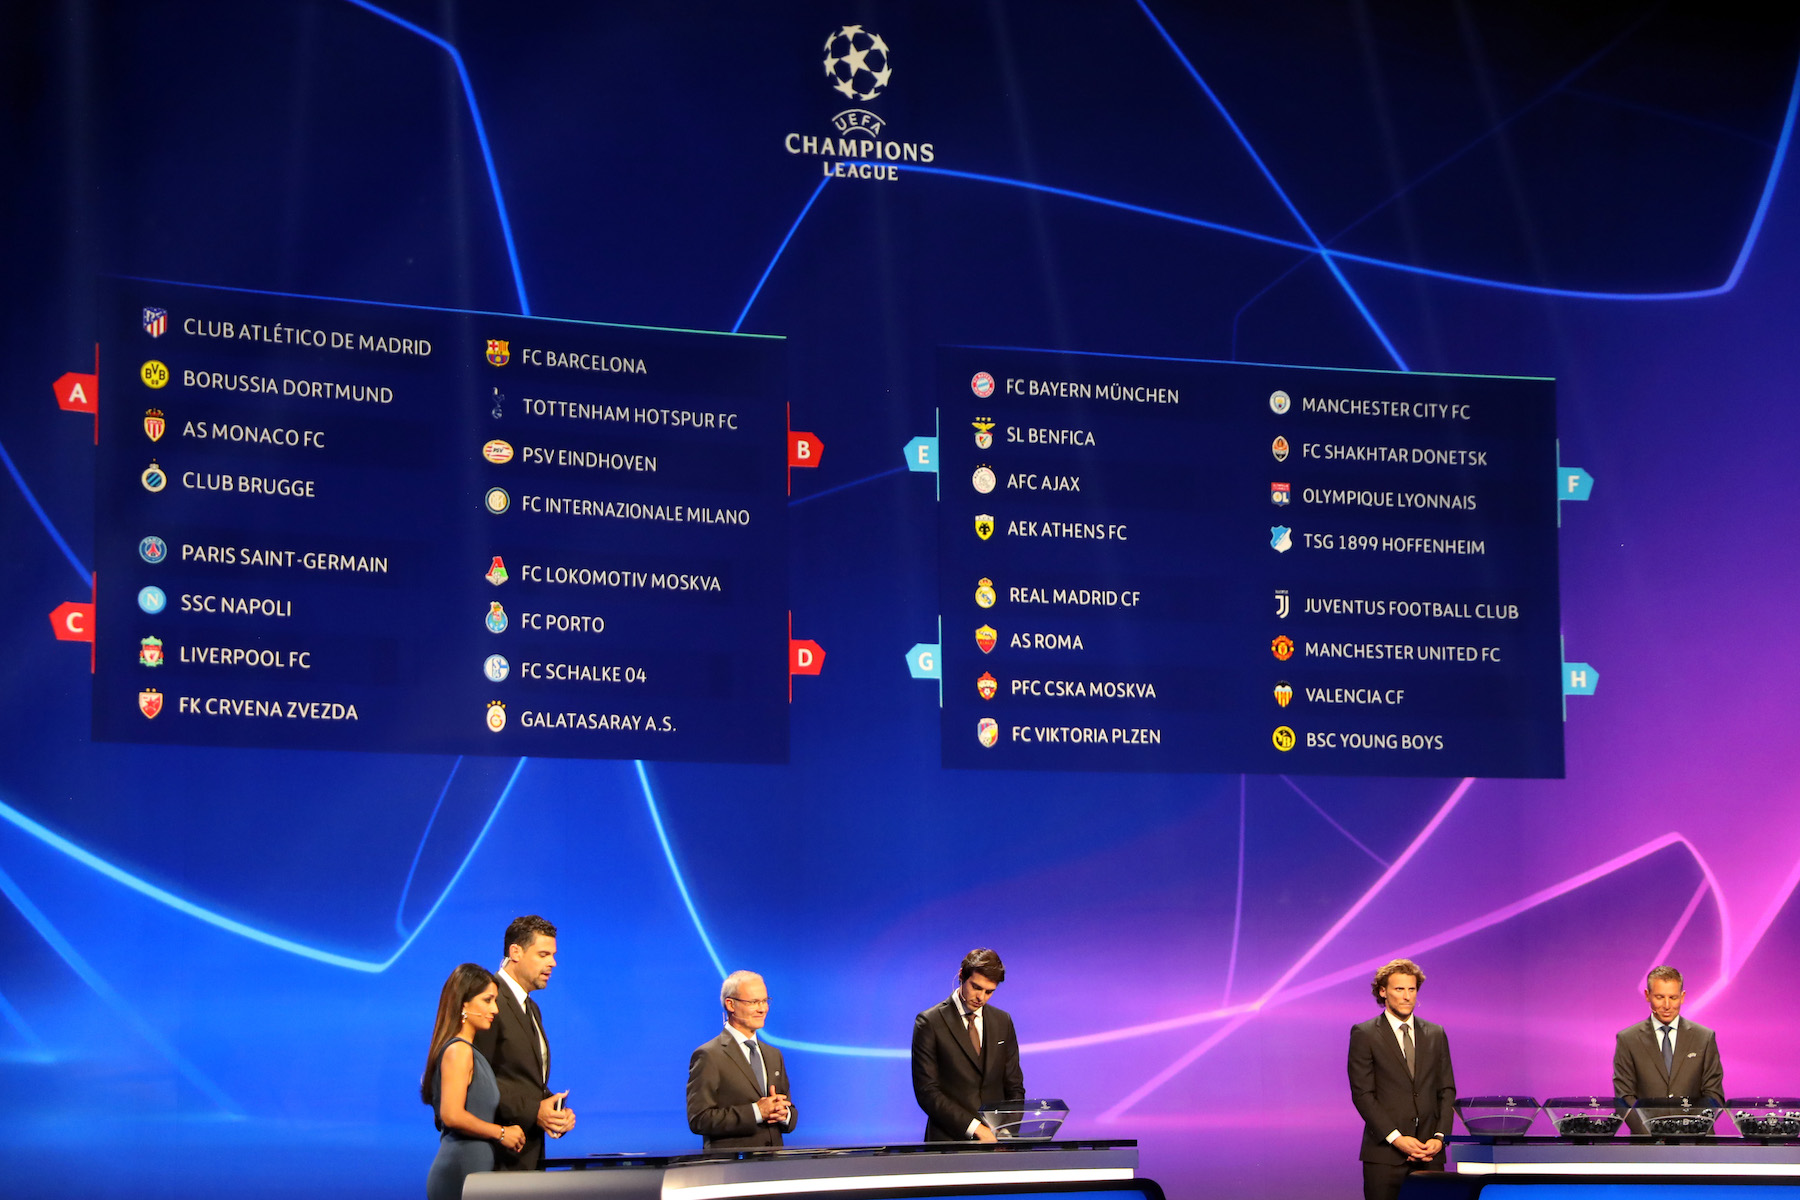 Champions League Fixtures Explained / Uefa Champions League Predictions